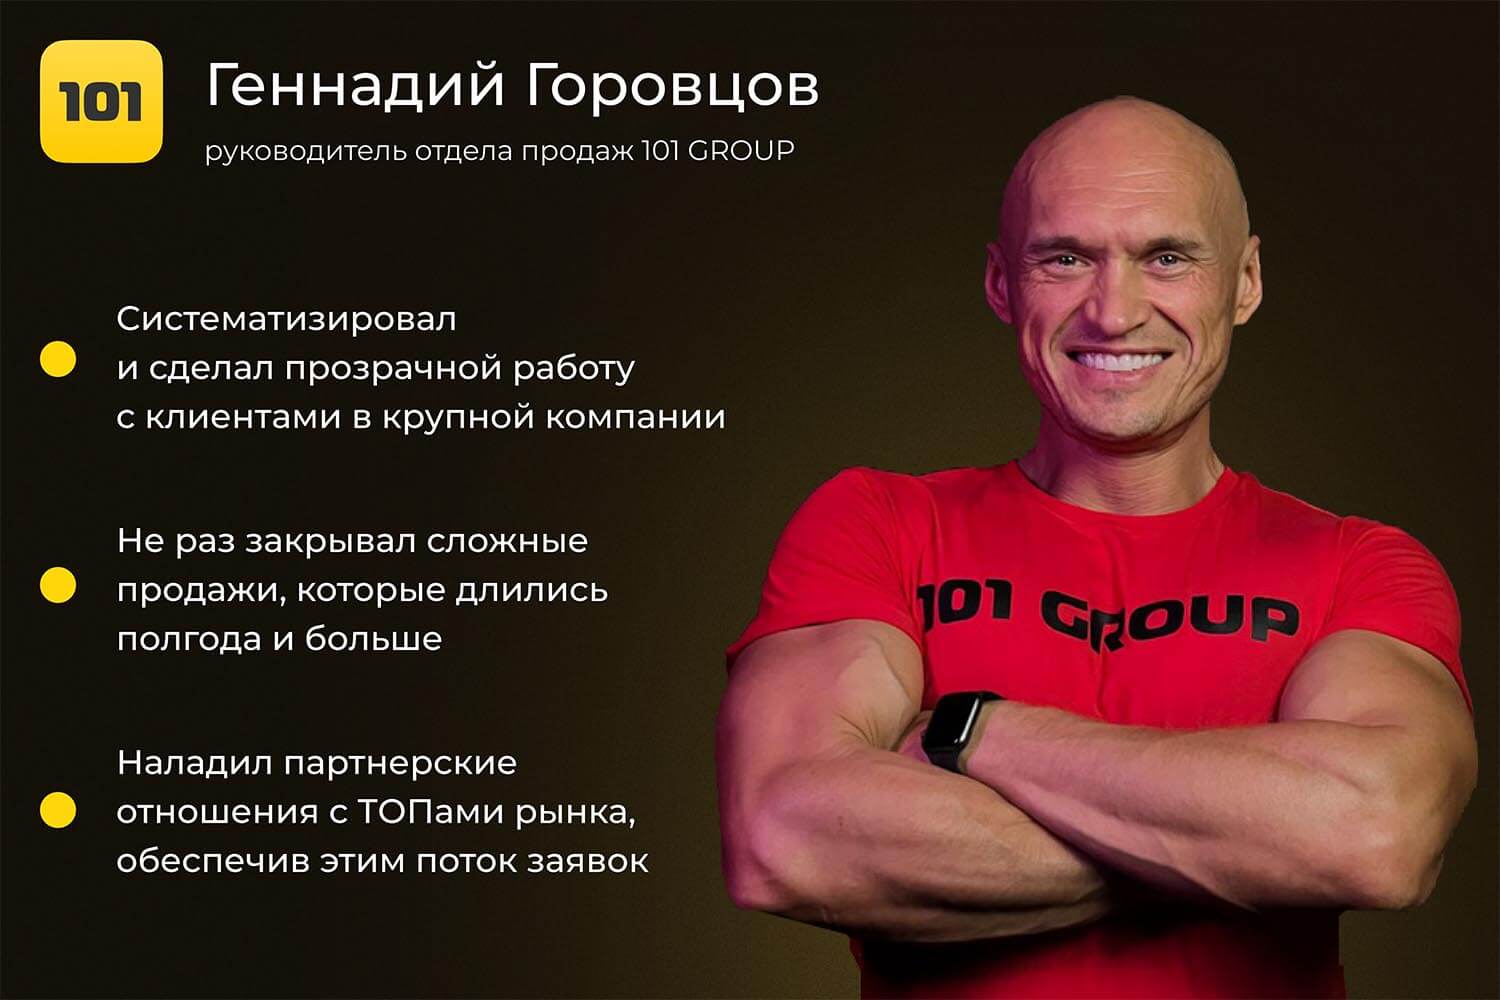 Геннадий Горовцов, руководитель отдела продаж 101 Group